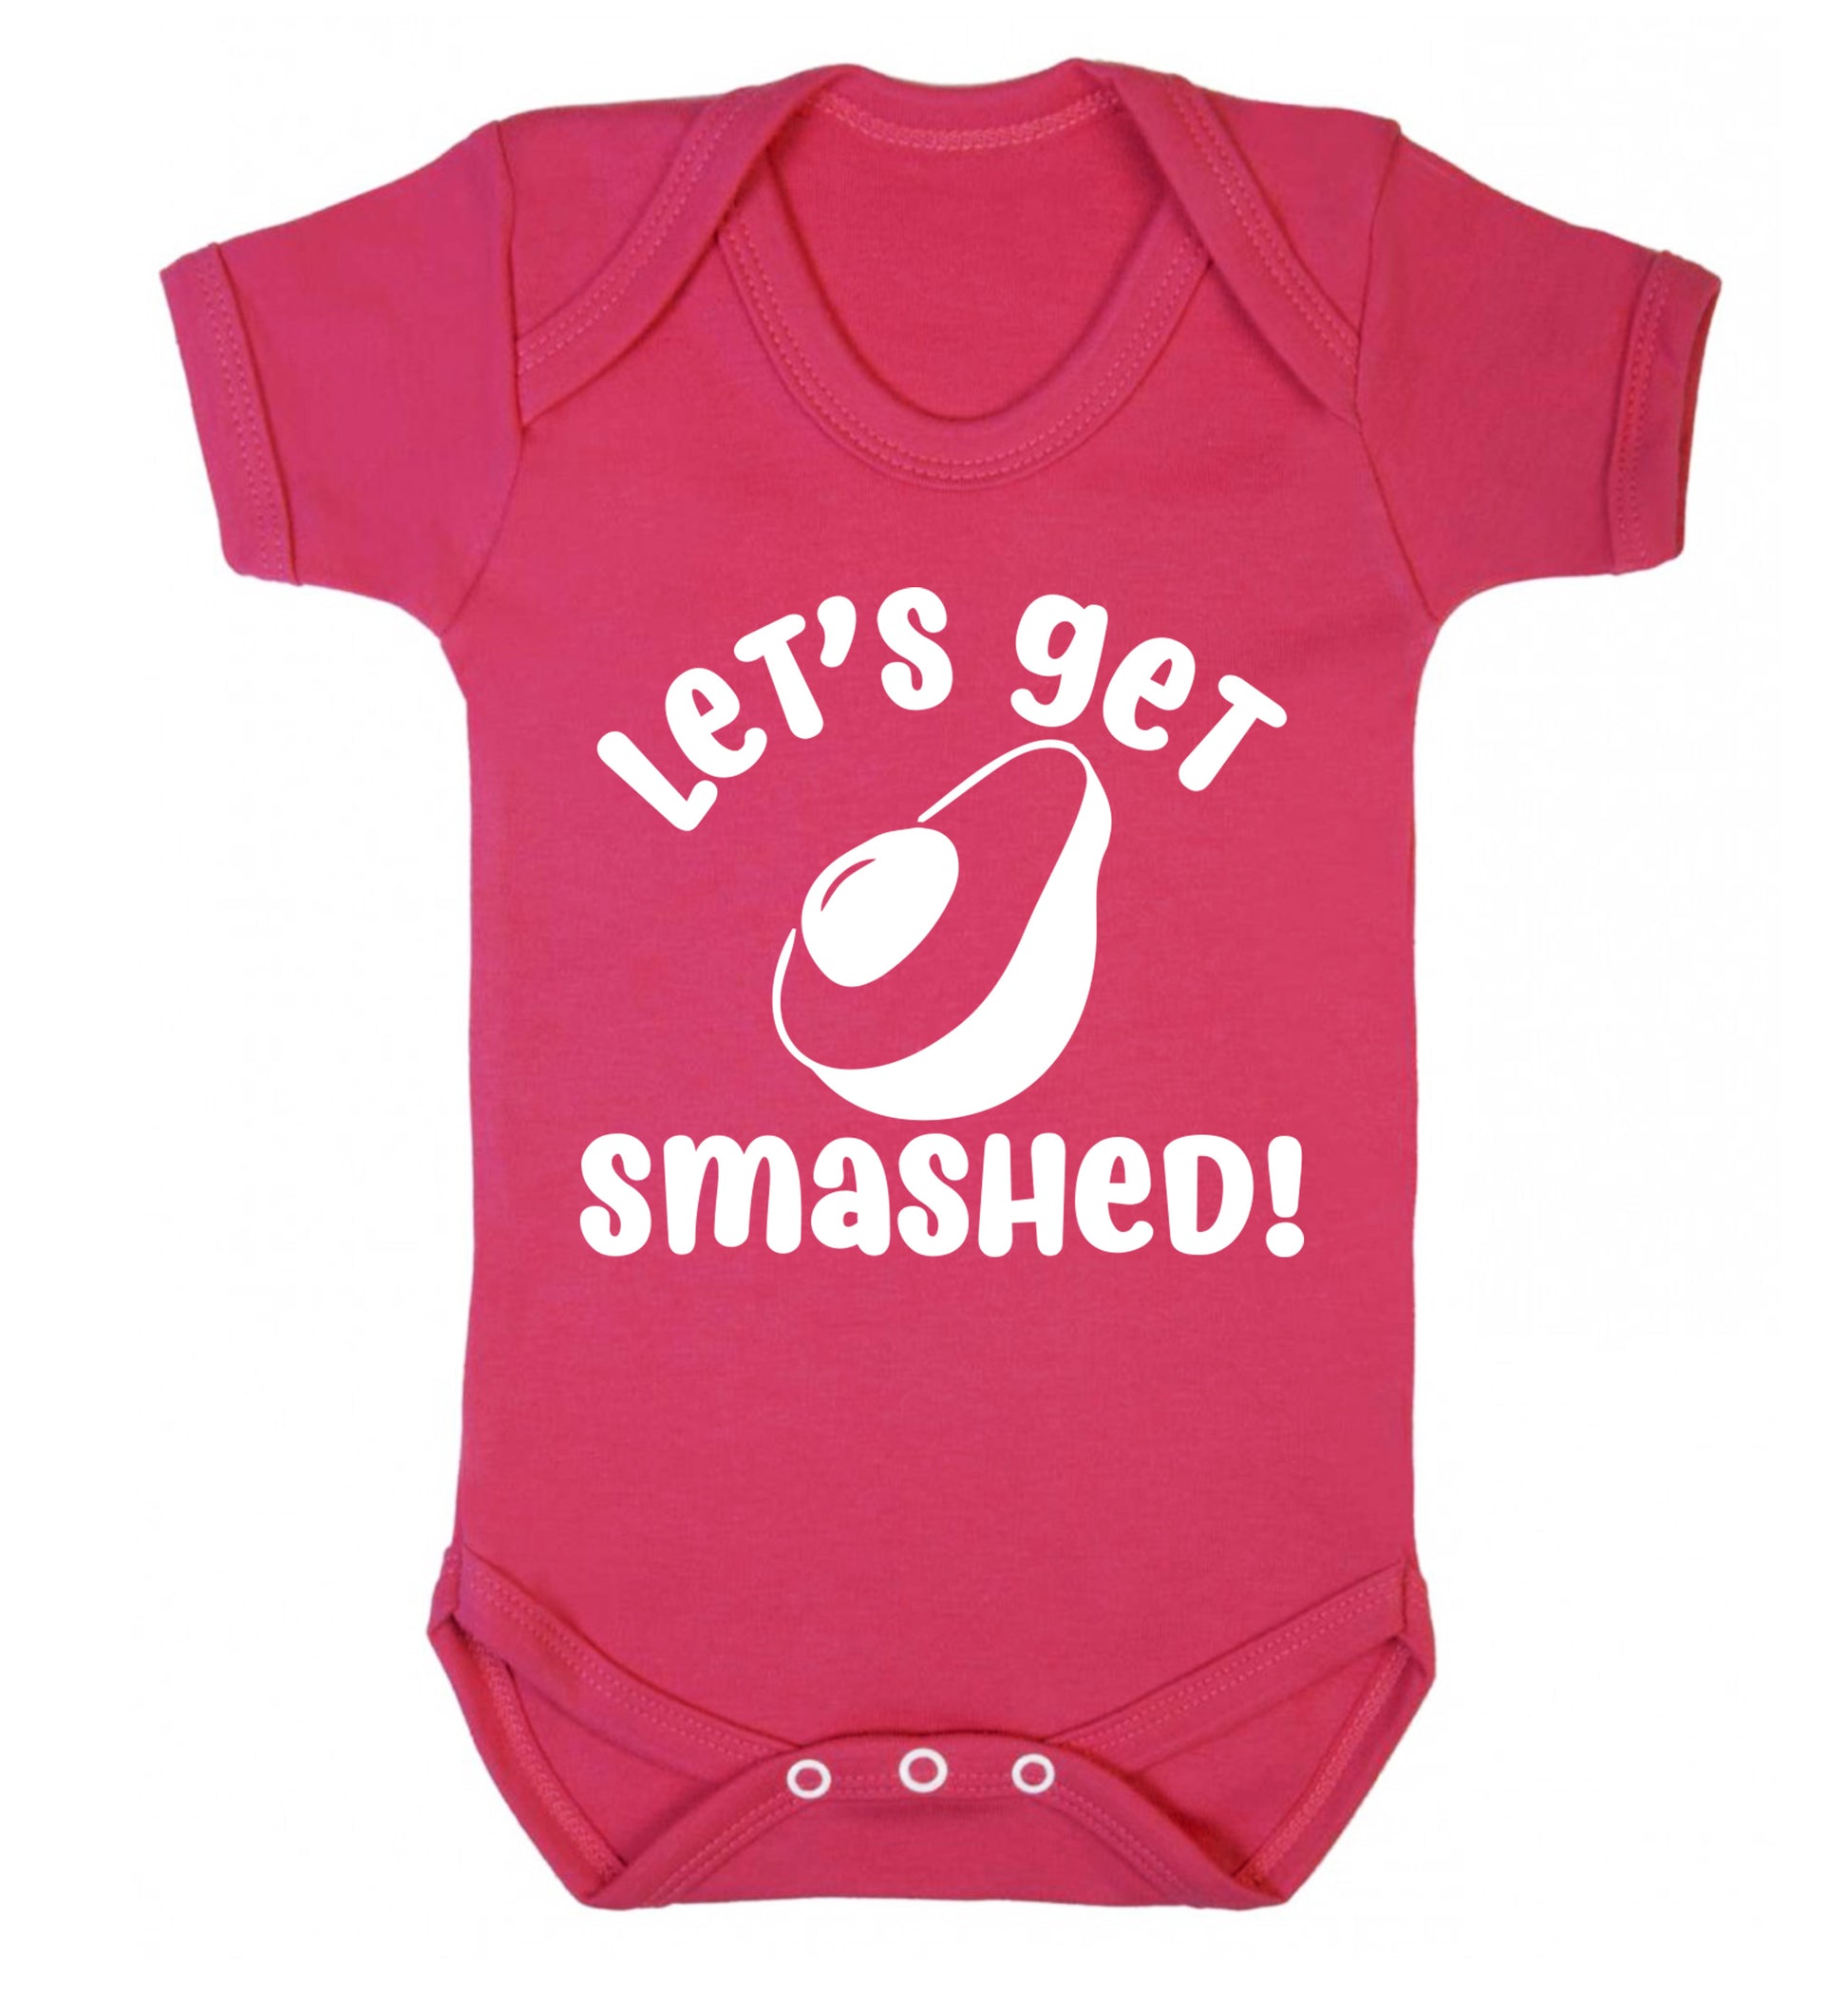 Let's get smashed Baby Vest dark pink 18-24 months